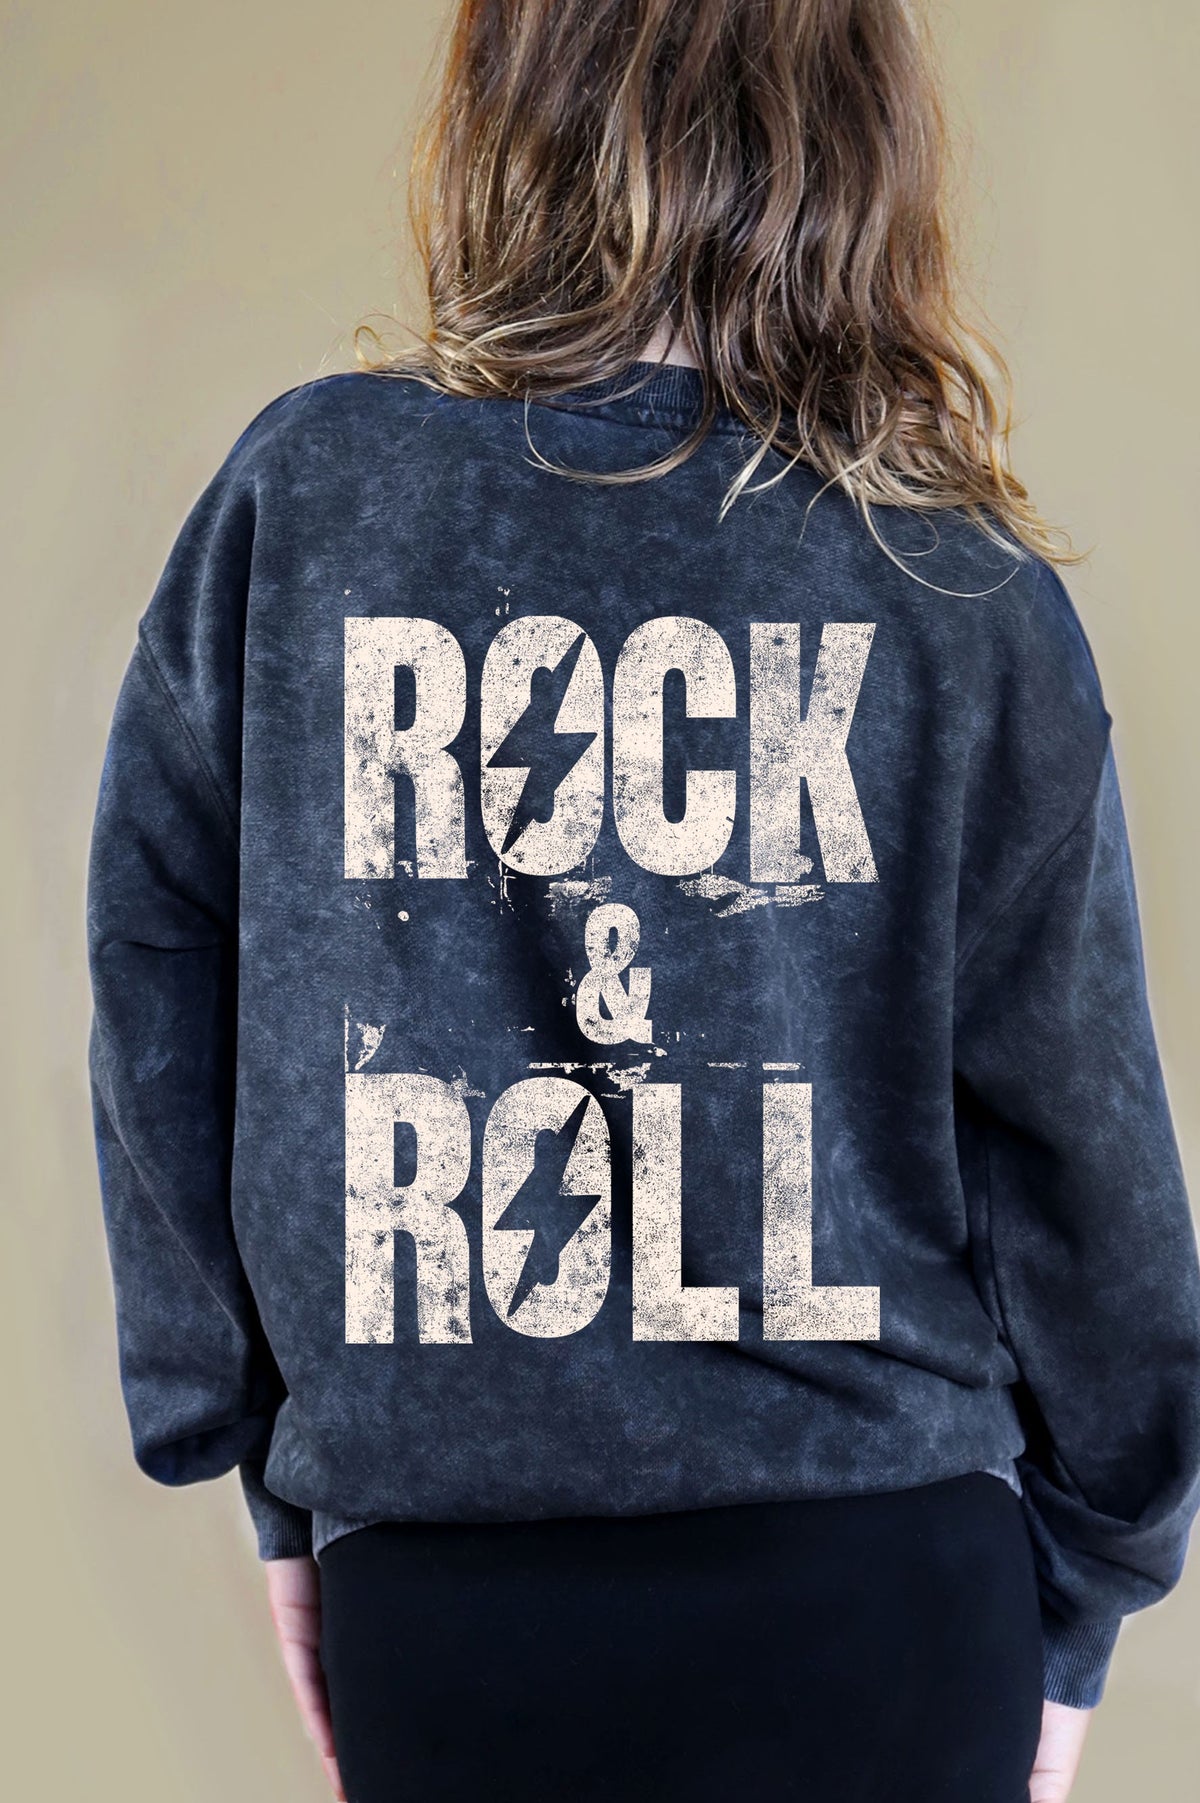 Rock N Roll Sweatshirt